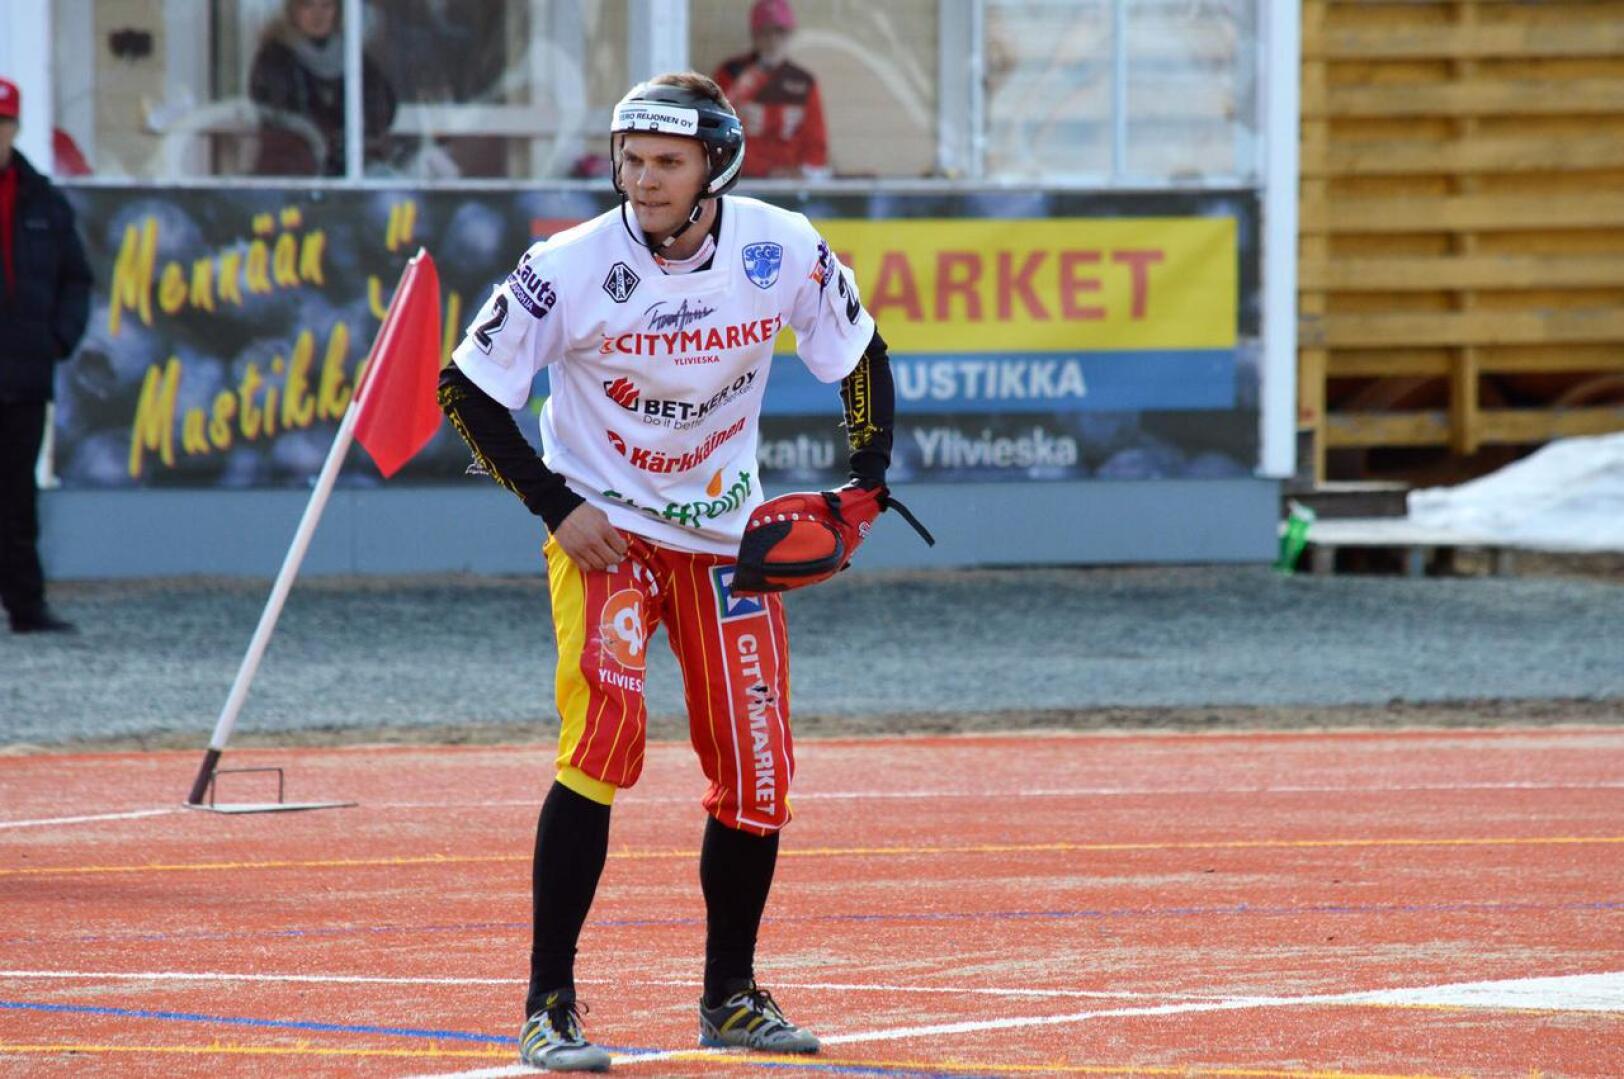 Tuomas Jussila loistaa ulkopelissä vuodesta toiseen. Kuula-kasvatti on pokannut kultainen räpylä -palkinnon neljä kertaa viimeisen viiden kauden aikana.